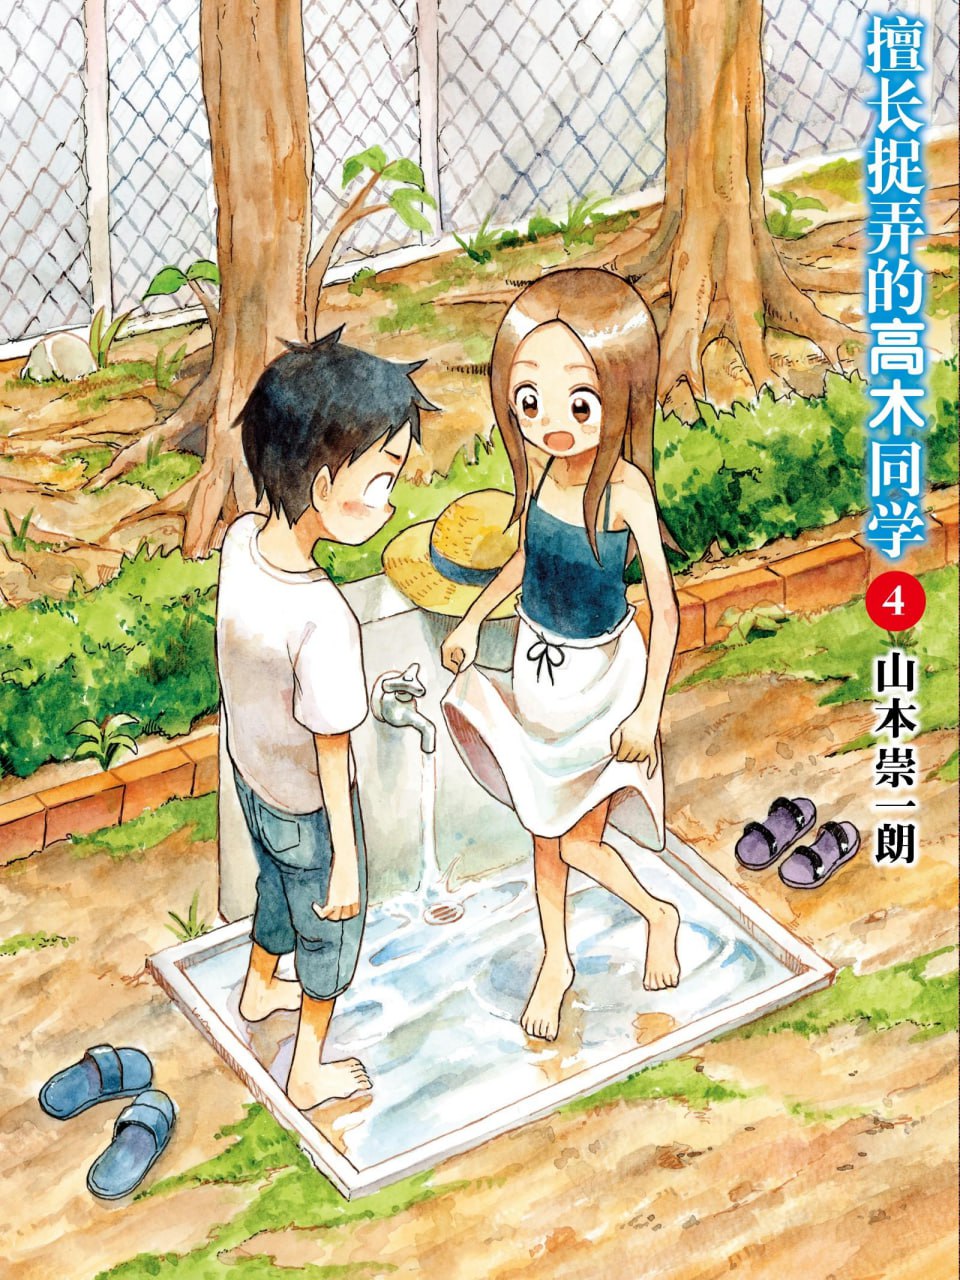 《擅长捉弄的高木同学》漫画书 已完结 繁体中文